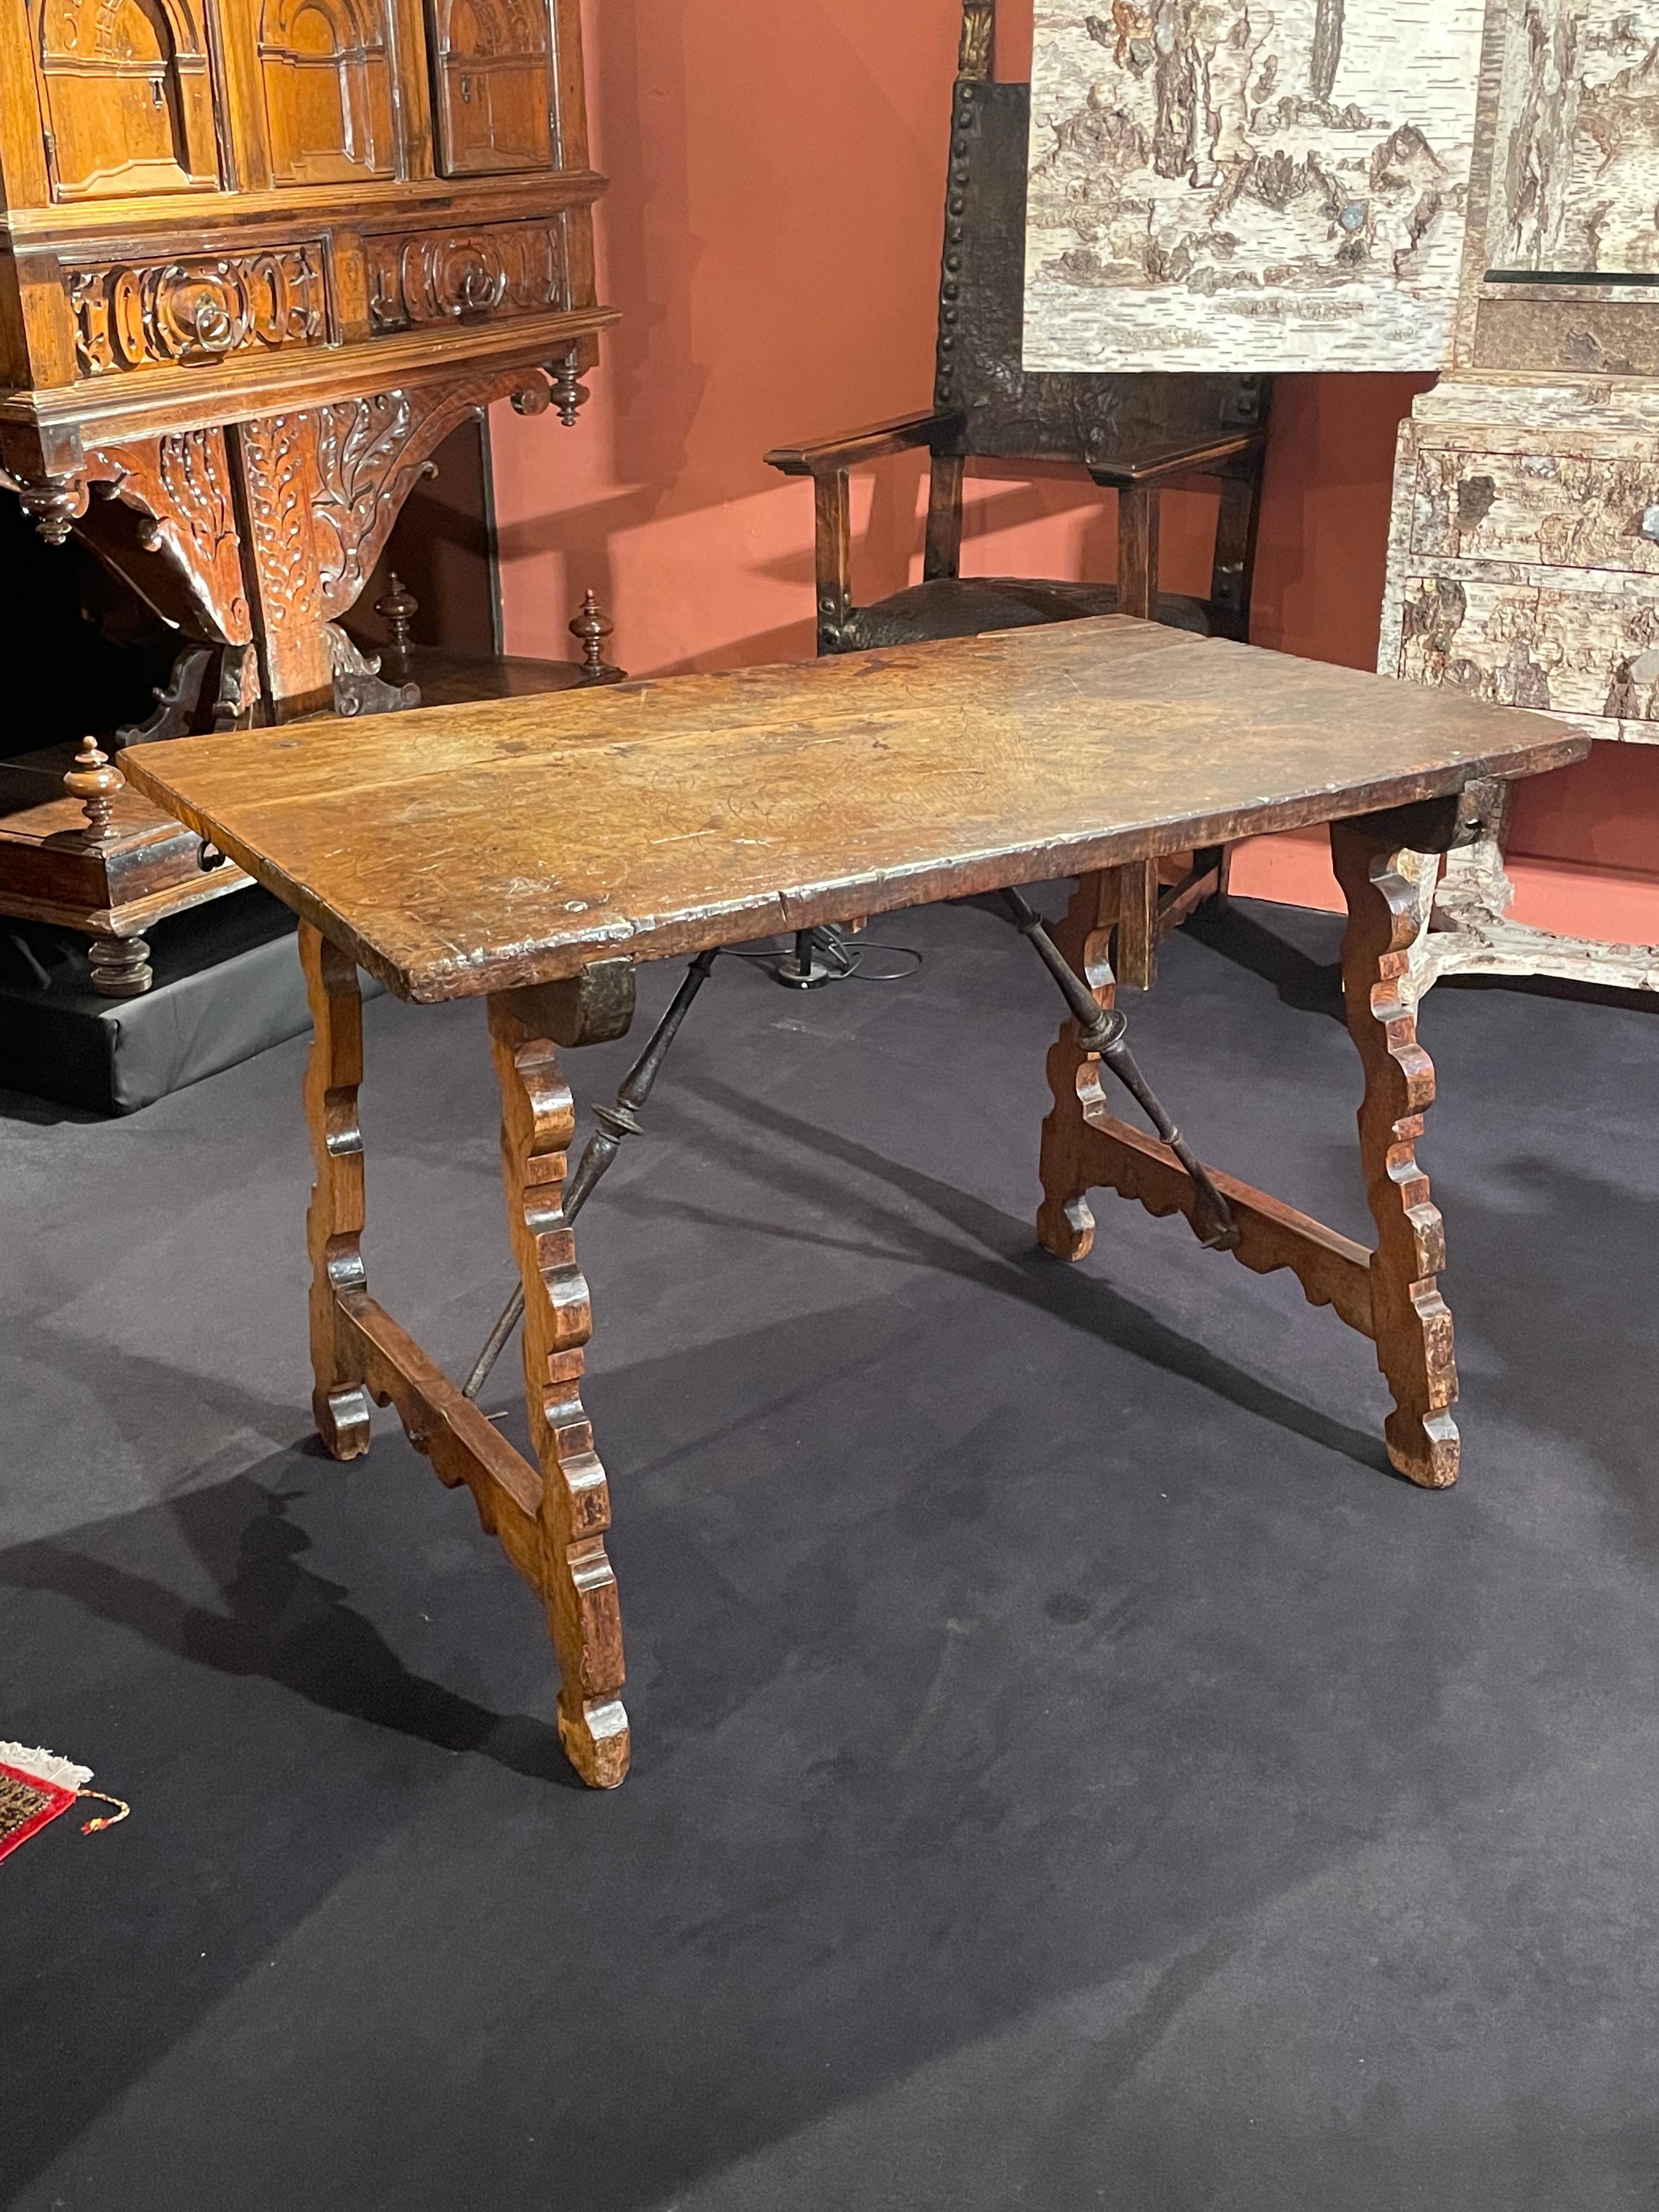 Diese Art von Tisch wurde von spanischen Tischlern im 16. Jahrhundert erfunden.

Dieser elegante Tisch kann leicht auseinander genommen werden. Seine rechteckige Platte wird mit Eisenhaken an den Beinen befestigt.
Es steht auf verschnörkelten,